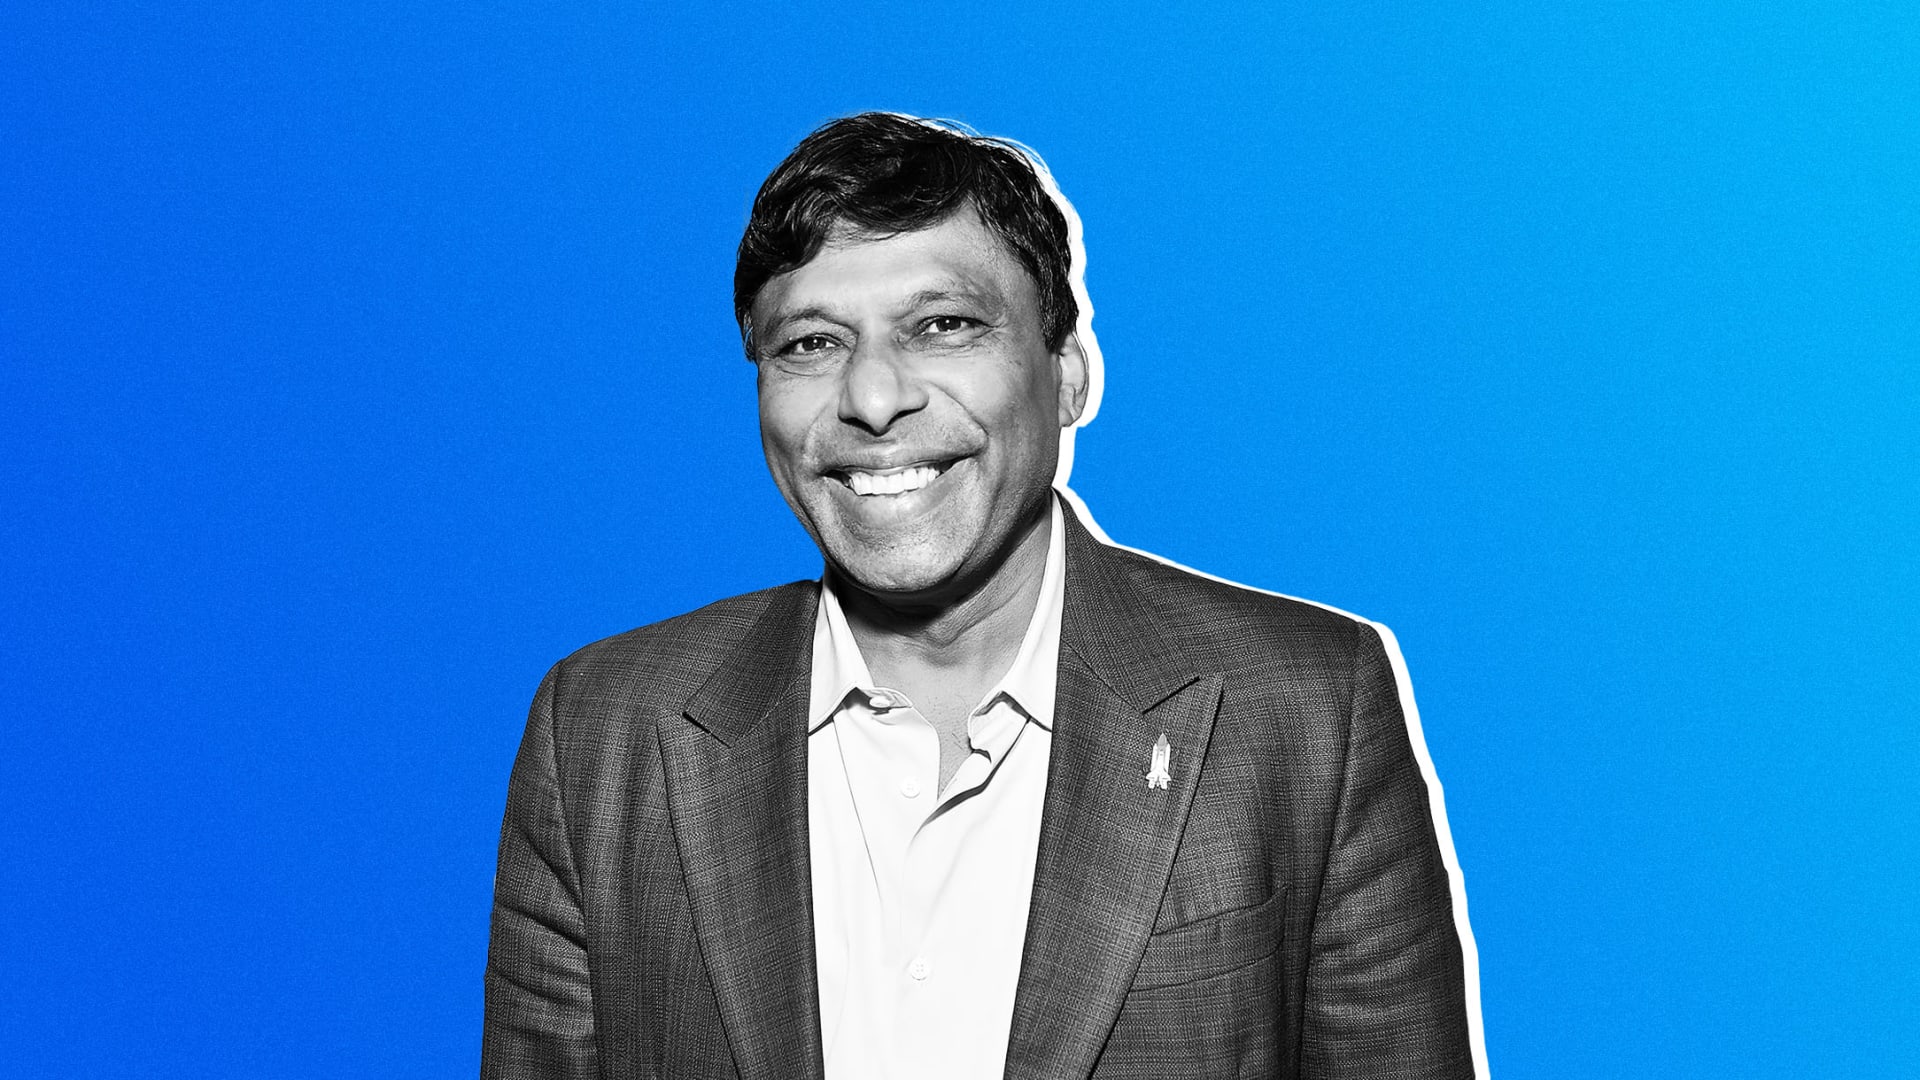 Naveen Jain là một doanh nhân được định hướng để giải quyết những thách thức lớn nhất trên thế giới thông qua đổi mới. Ảnh: @AFP.